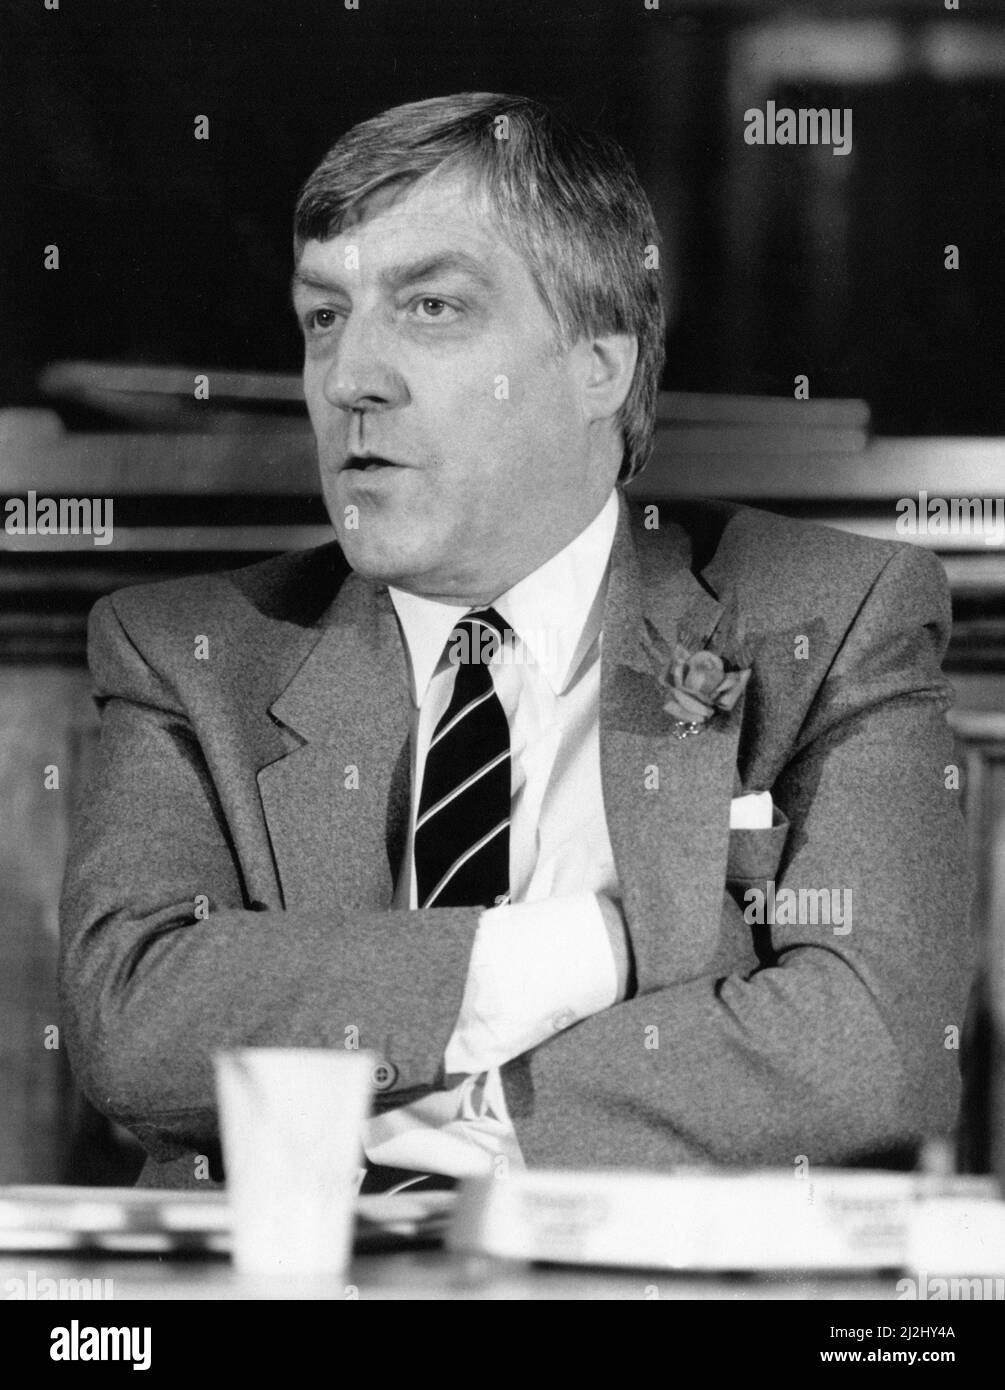 Il 10th novembre 1988 si è svolta la sottoelezione di Glasgow Govan 1988, causata dalle dimissioni di Bruce Millan in qualità di membro del Parlamento per la circoscrizione dopo la sua nomina a Commissario europeo. Il risultato è stato visto come imbarazzante per il partito laburista, con l'ex parlamentare laburista Jim Sillars che ha vinto il seggio per il partito nazionale scozzese con una maggioranza di 3.554 voti e una grande oscillazione dal laburista al partito SNP. I nostri spettacoli di foto ... Bob Gillespie candidato laburista, che è arrivato secondo con il 36,9% dei voti, nella foto di mercoledì 2nd novembre 1988. Foto Stock